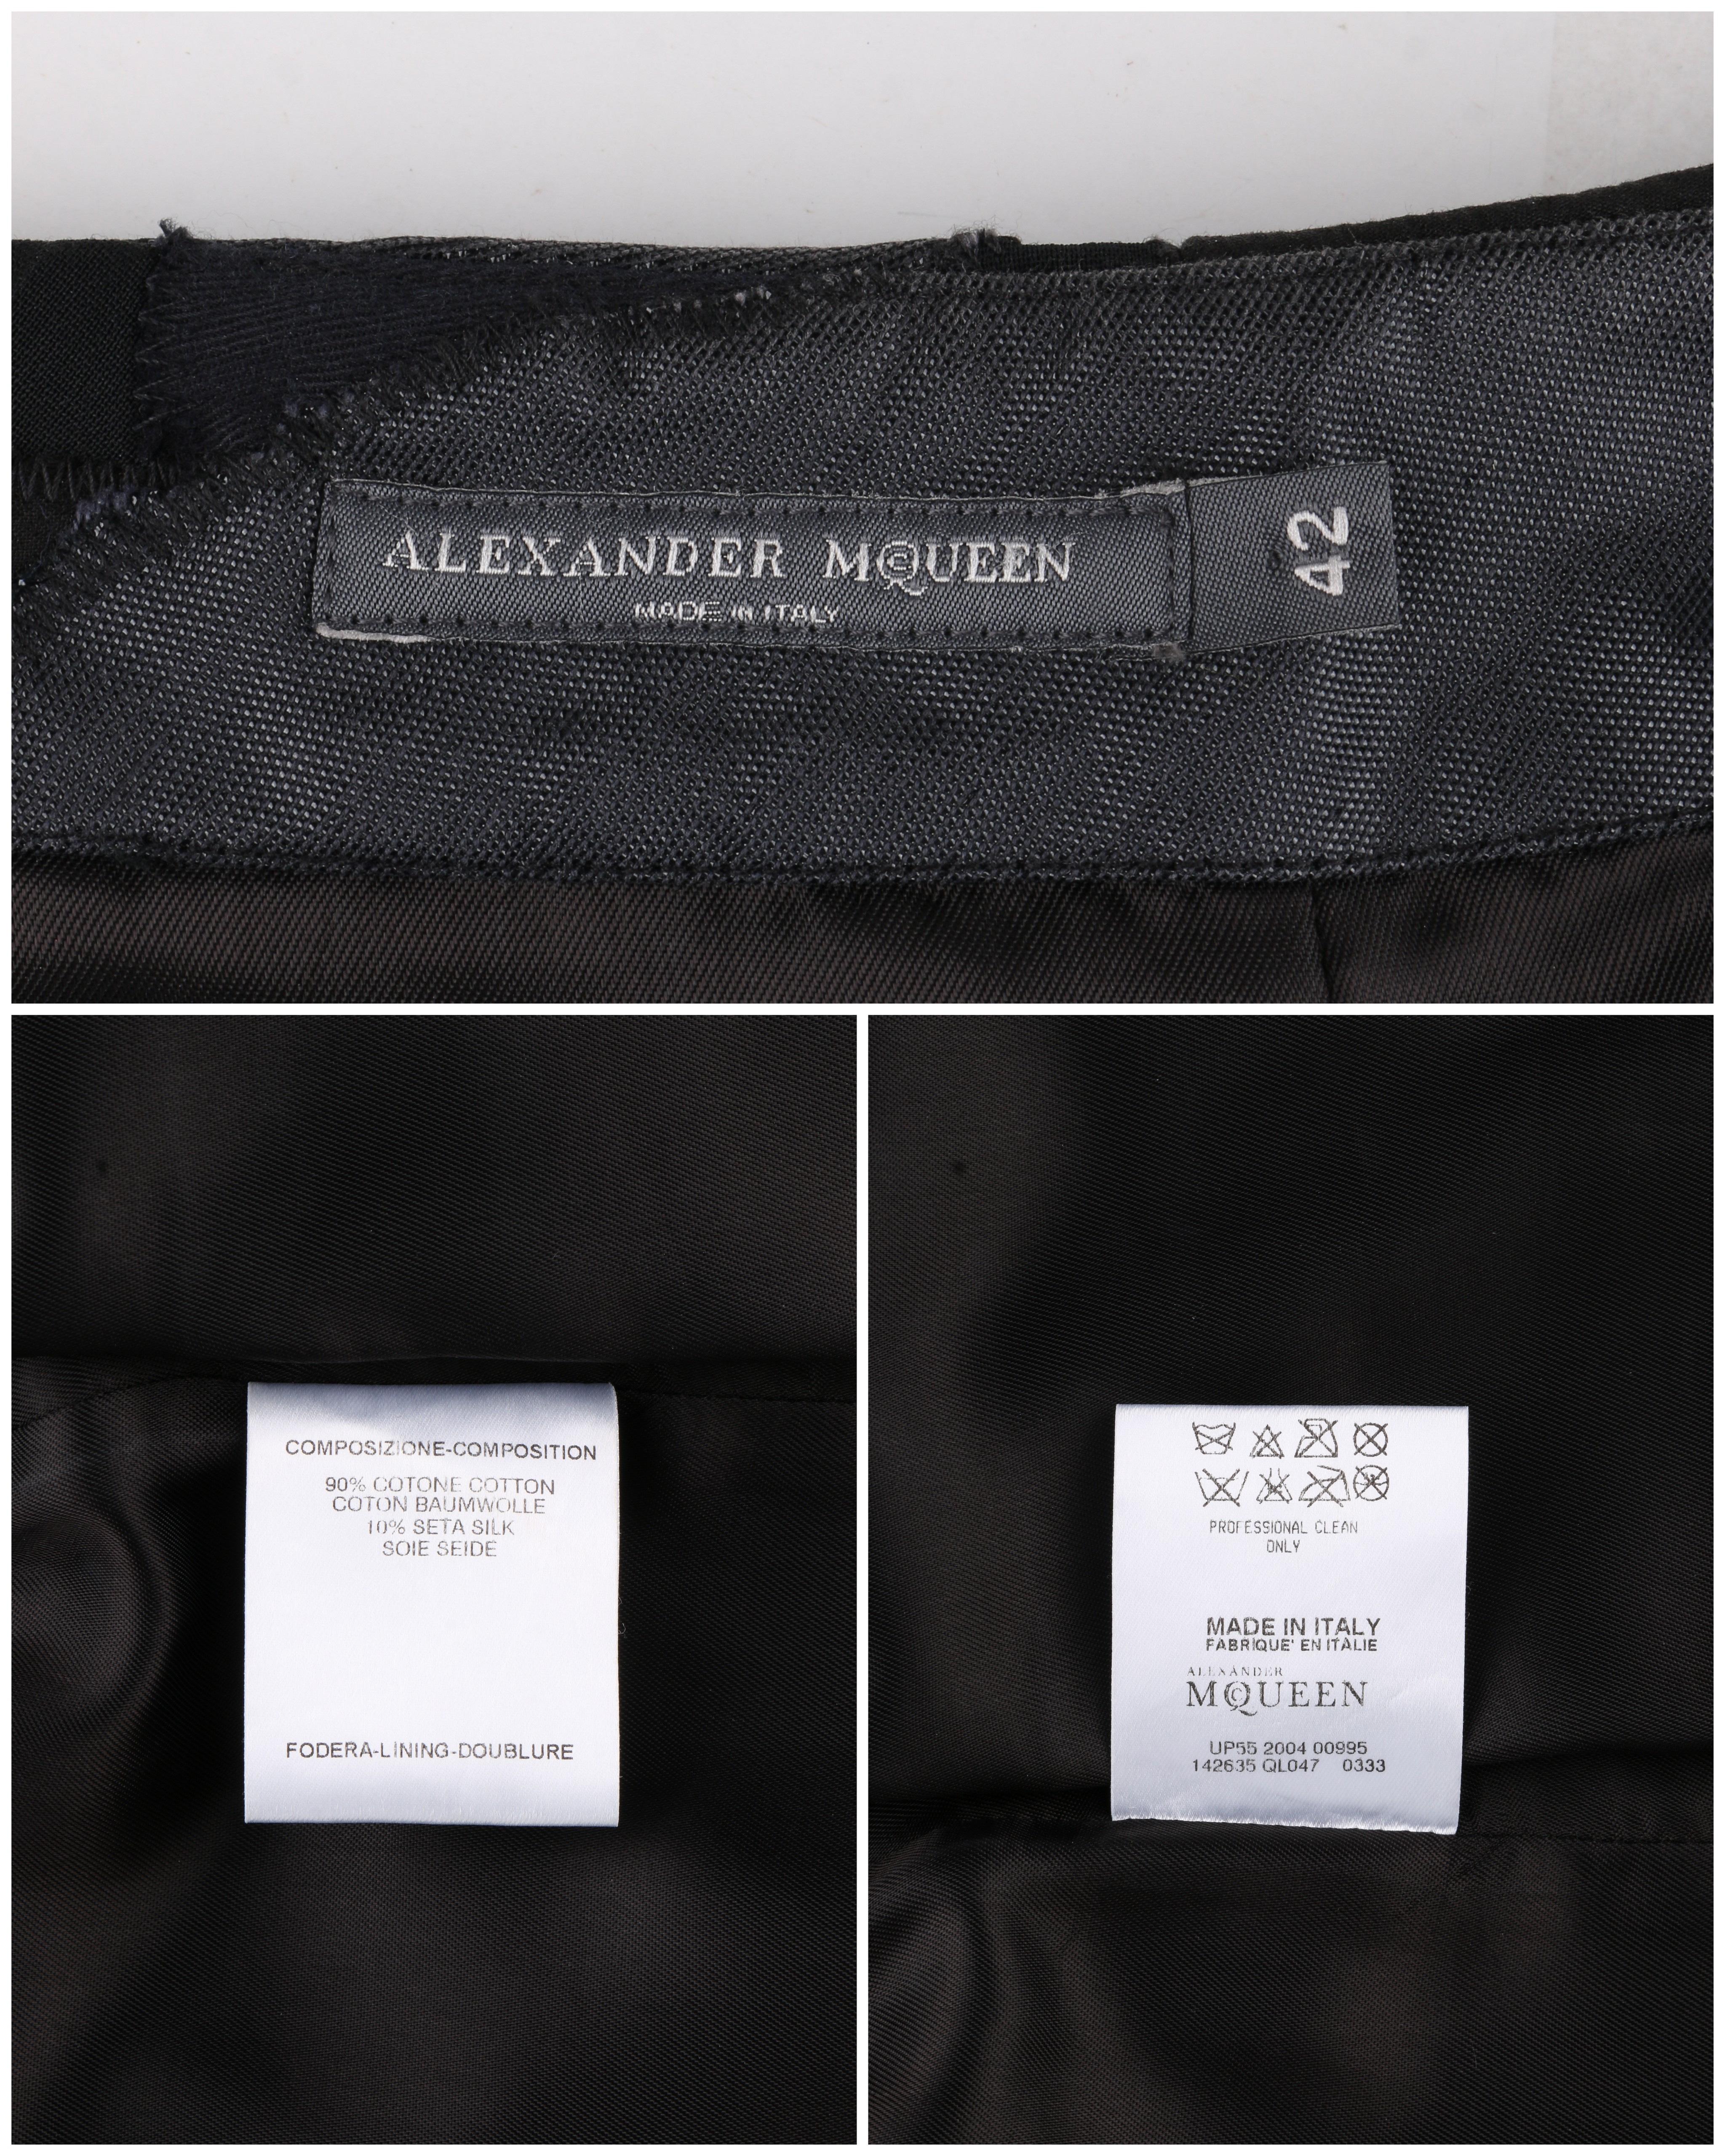 ALEXANDER McQUEEN S/S 2005 